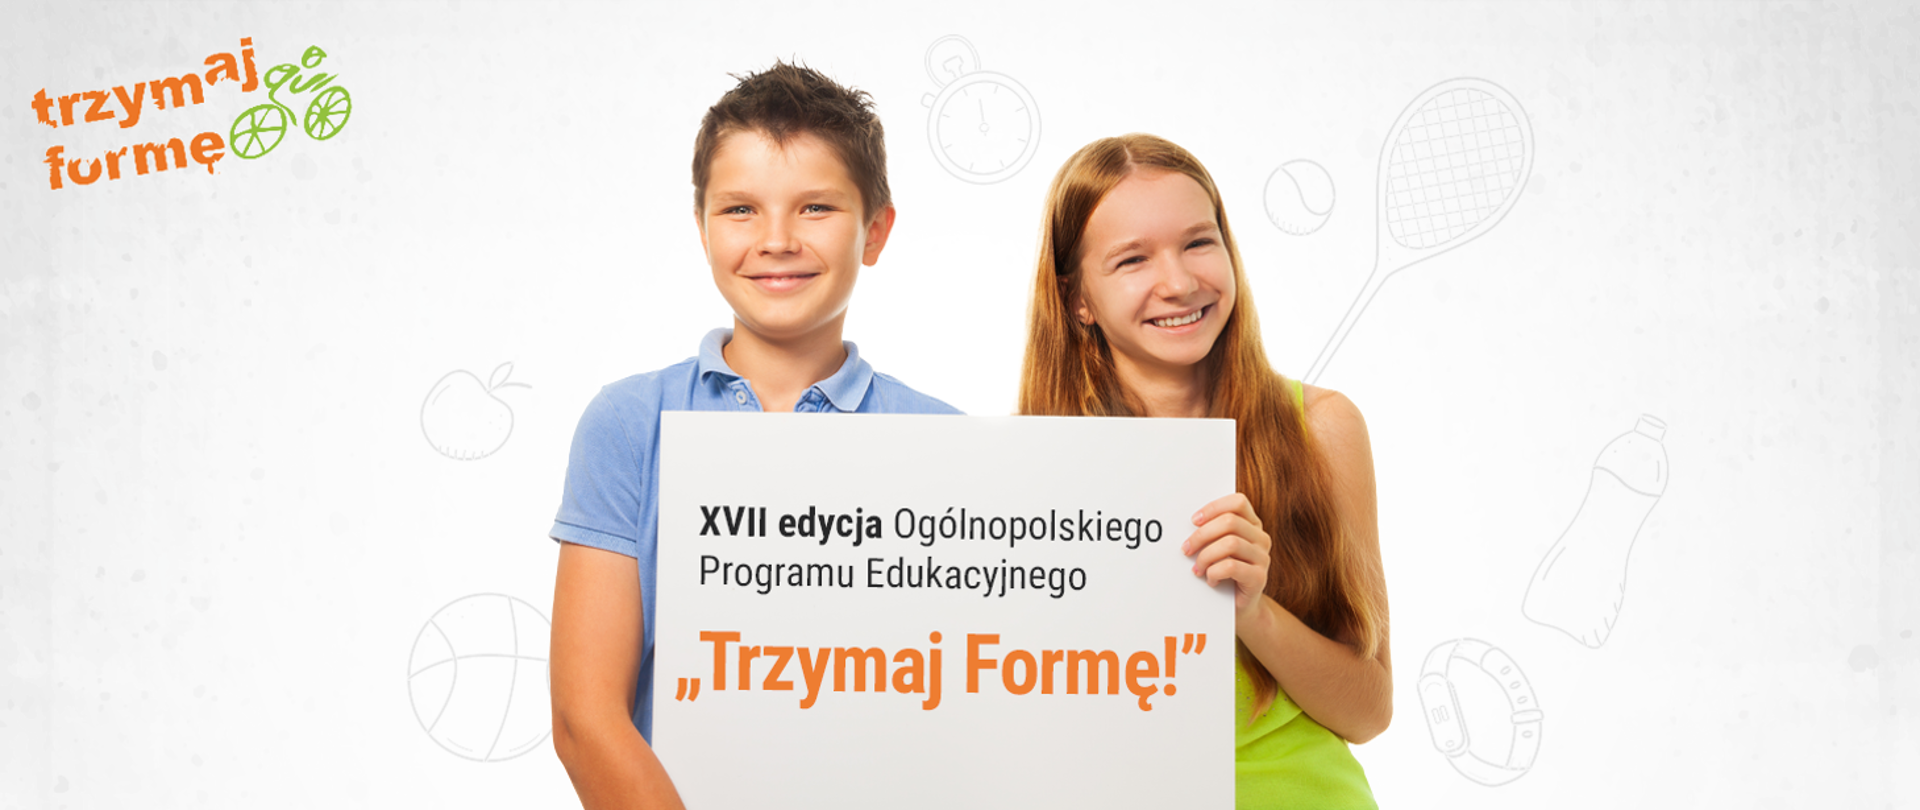 Chłopiec i dziewczynka trzymający kartkę z napisem XVII edycja Ogólnopolskiego Programu Edukacyjnego Trzymaj Formę! 